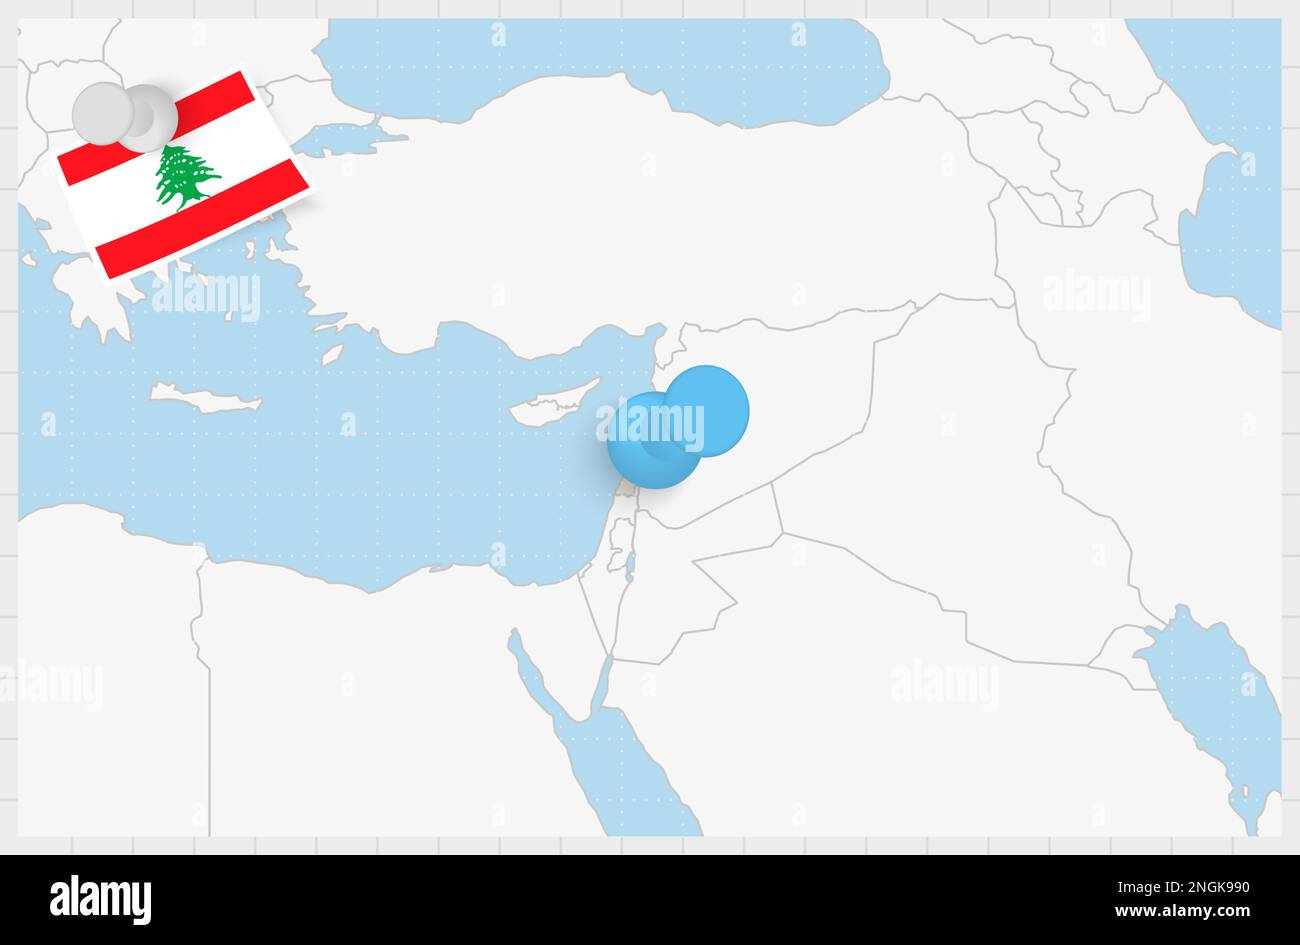 Carte du Liban avec une épingle bleue. Drapeau punaisé du Liban, illustration vectorielle. Illustration de Vecteur